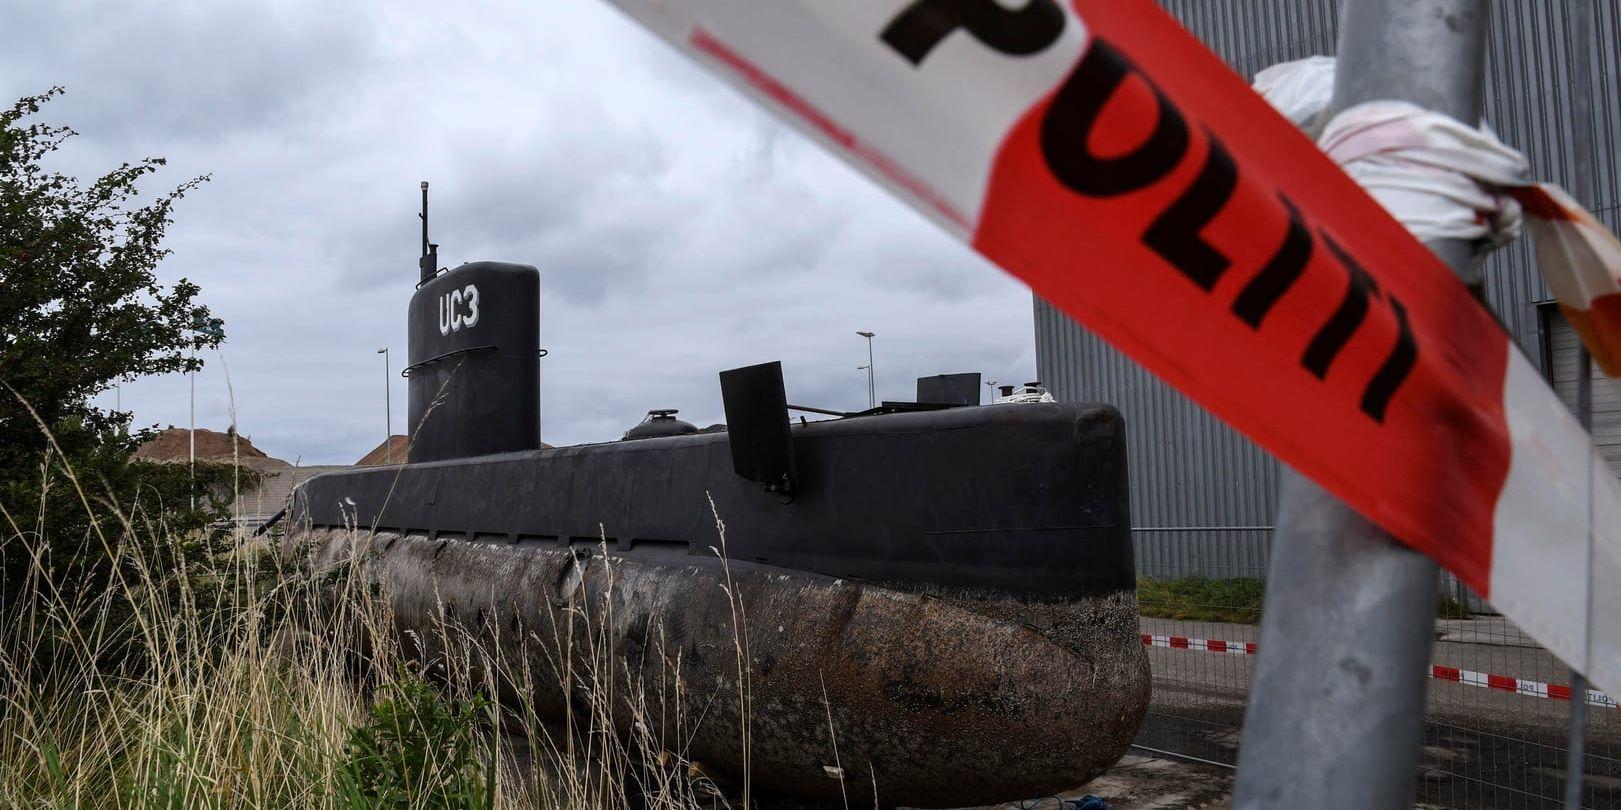 Ubåten UC3 Nautilus omgiven av polisens avspärrningsband och staket på en industritomt i Nordhavn i Köpenhamn. Nu väntar ny rättegång om mordet i ubåten. Arkivbild.